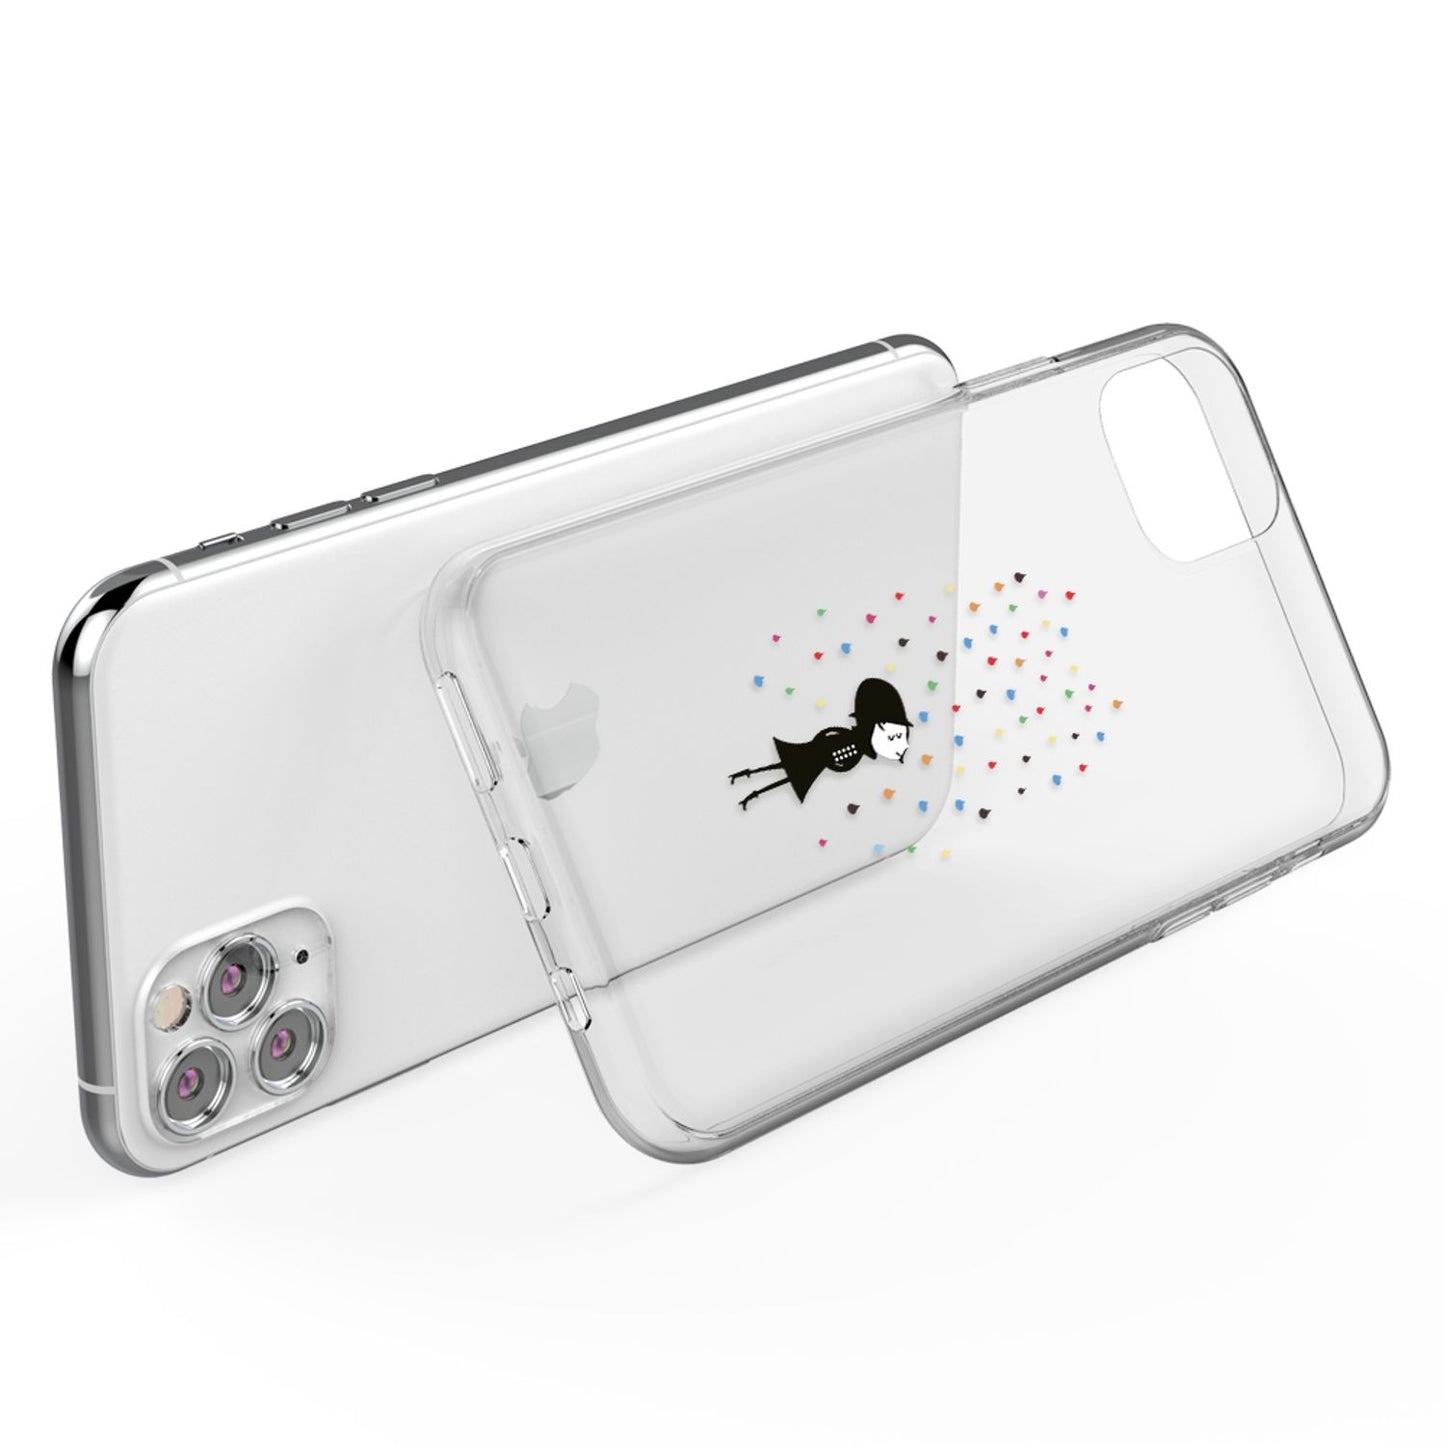 NALIA Motiv Handyhülle für iPhone 11 Pro, Slim Schutz Case Cover Tasche Bumper Etui